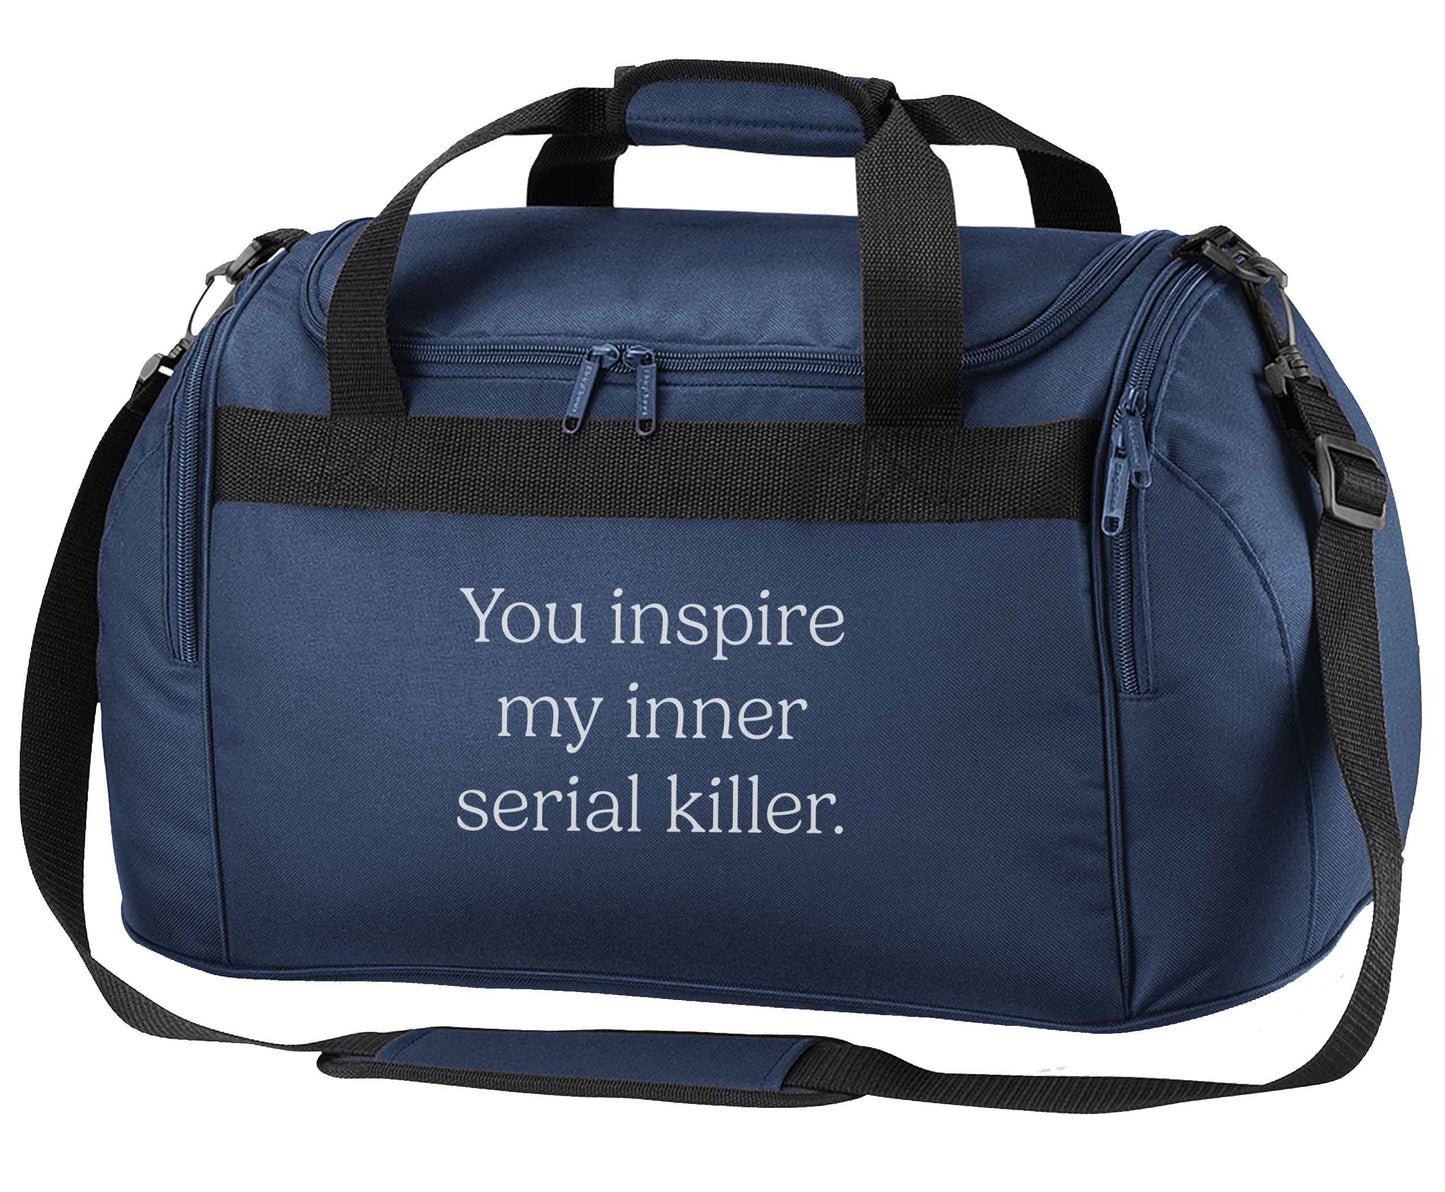 You inspire my inner serial killer Kit navy holdall / duffel bag